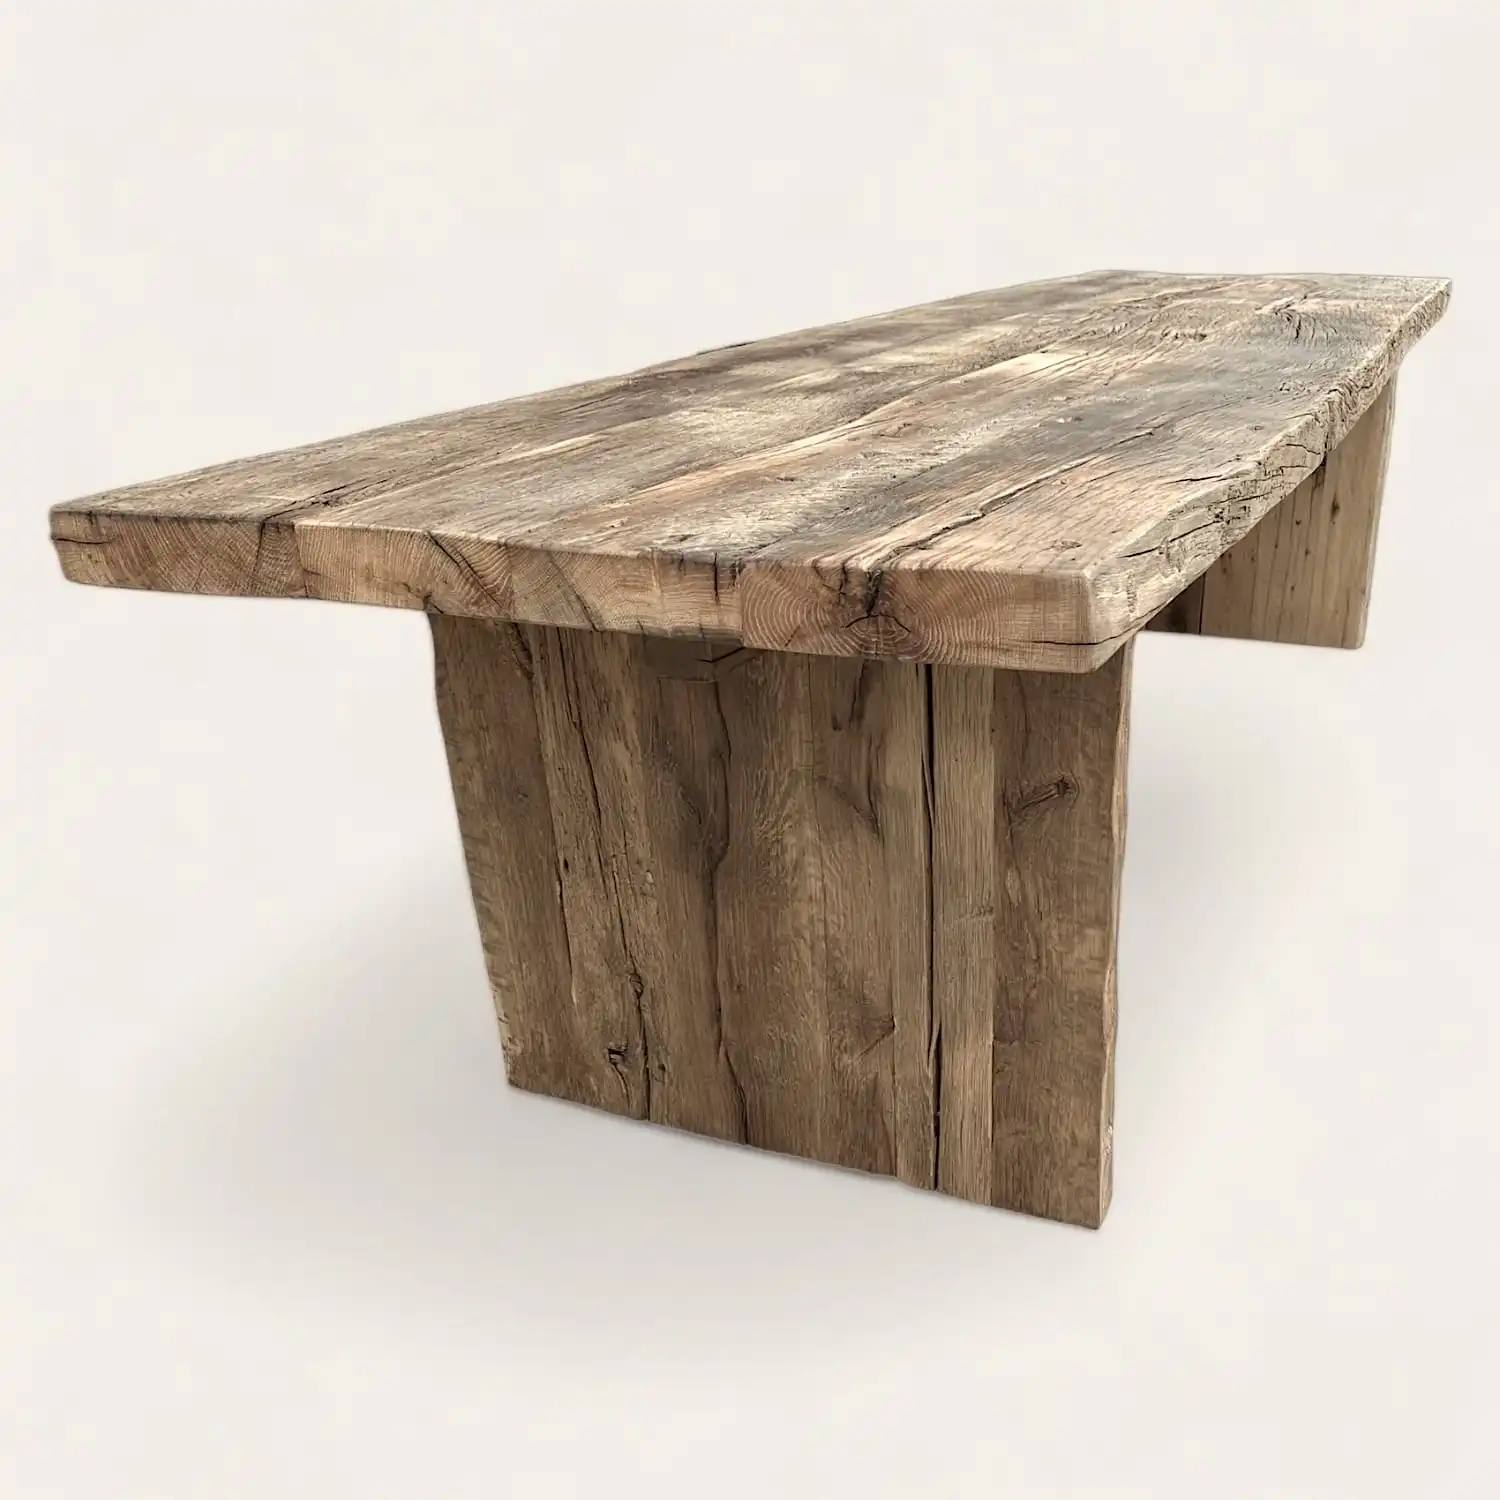  Une table à manger en bois rustique fabriquée à partir de bois récupéré. 